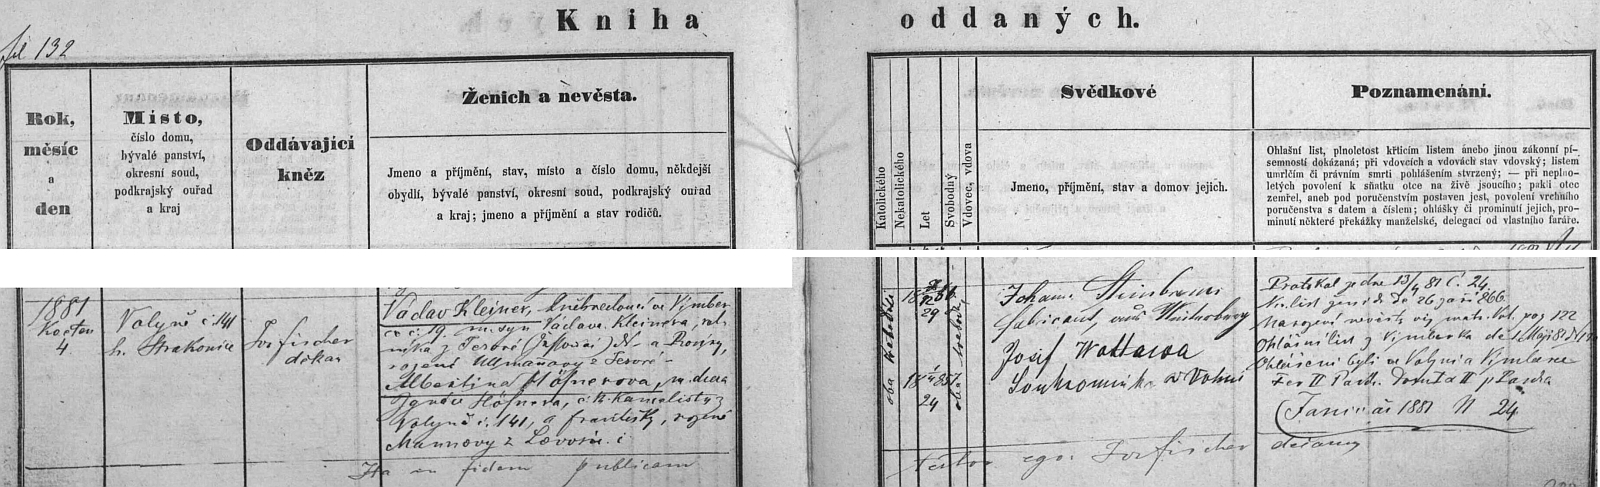 Záznam o jeho svatbě ve volyňské knize oddaných s podpisem svědka Johanna Steibrenera